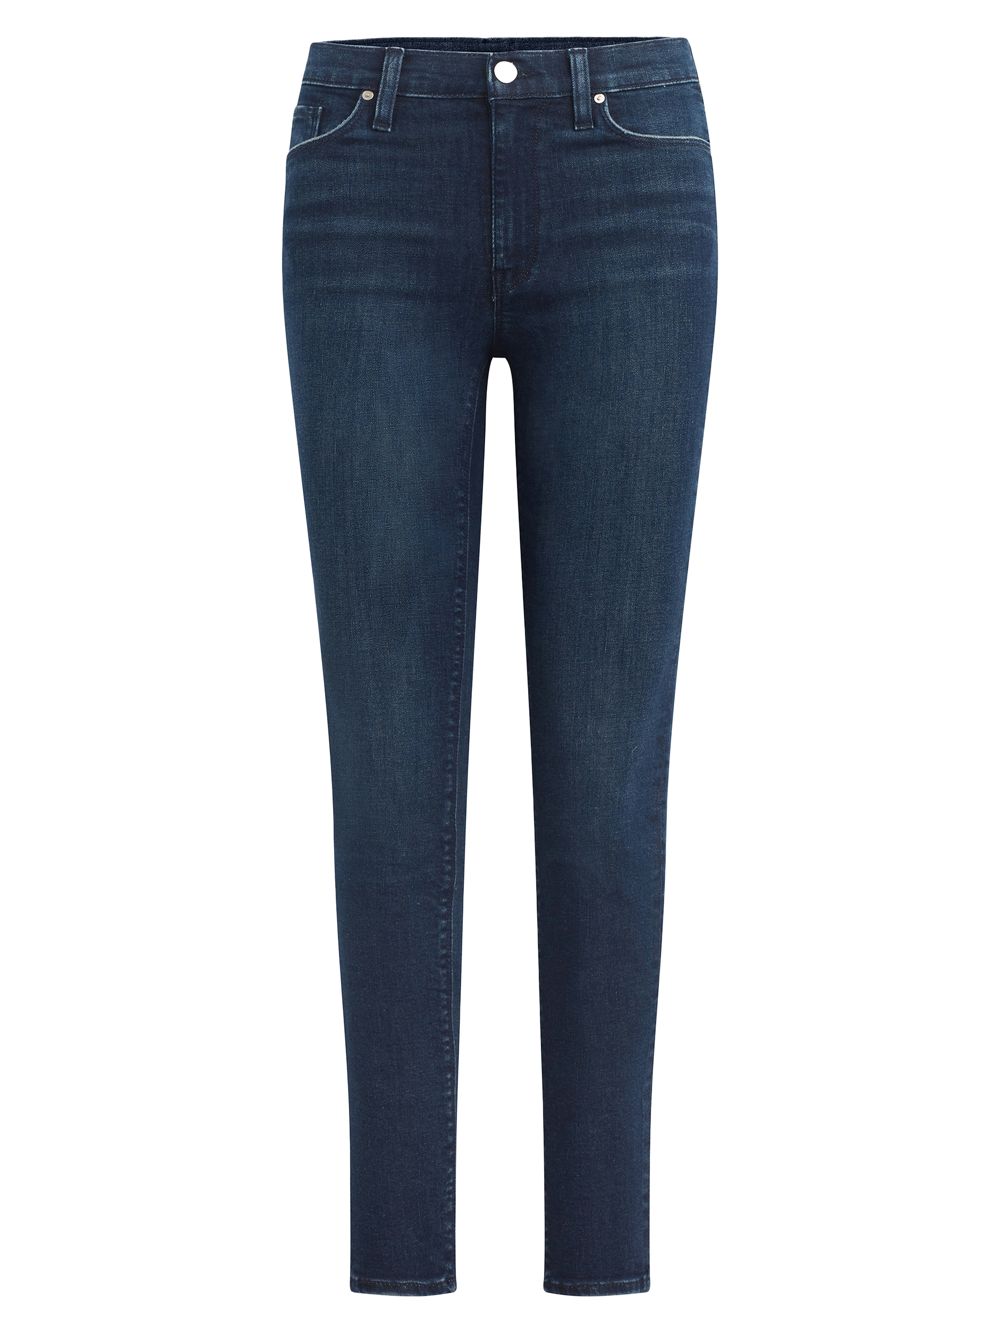 Укороченные джинсы суперскинни Barbara с высокой посадкой Hudson Jeans укороченные прямые джинсы kass с высокой посадкой hudson цвет sabina